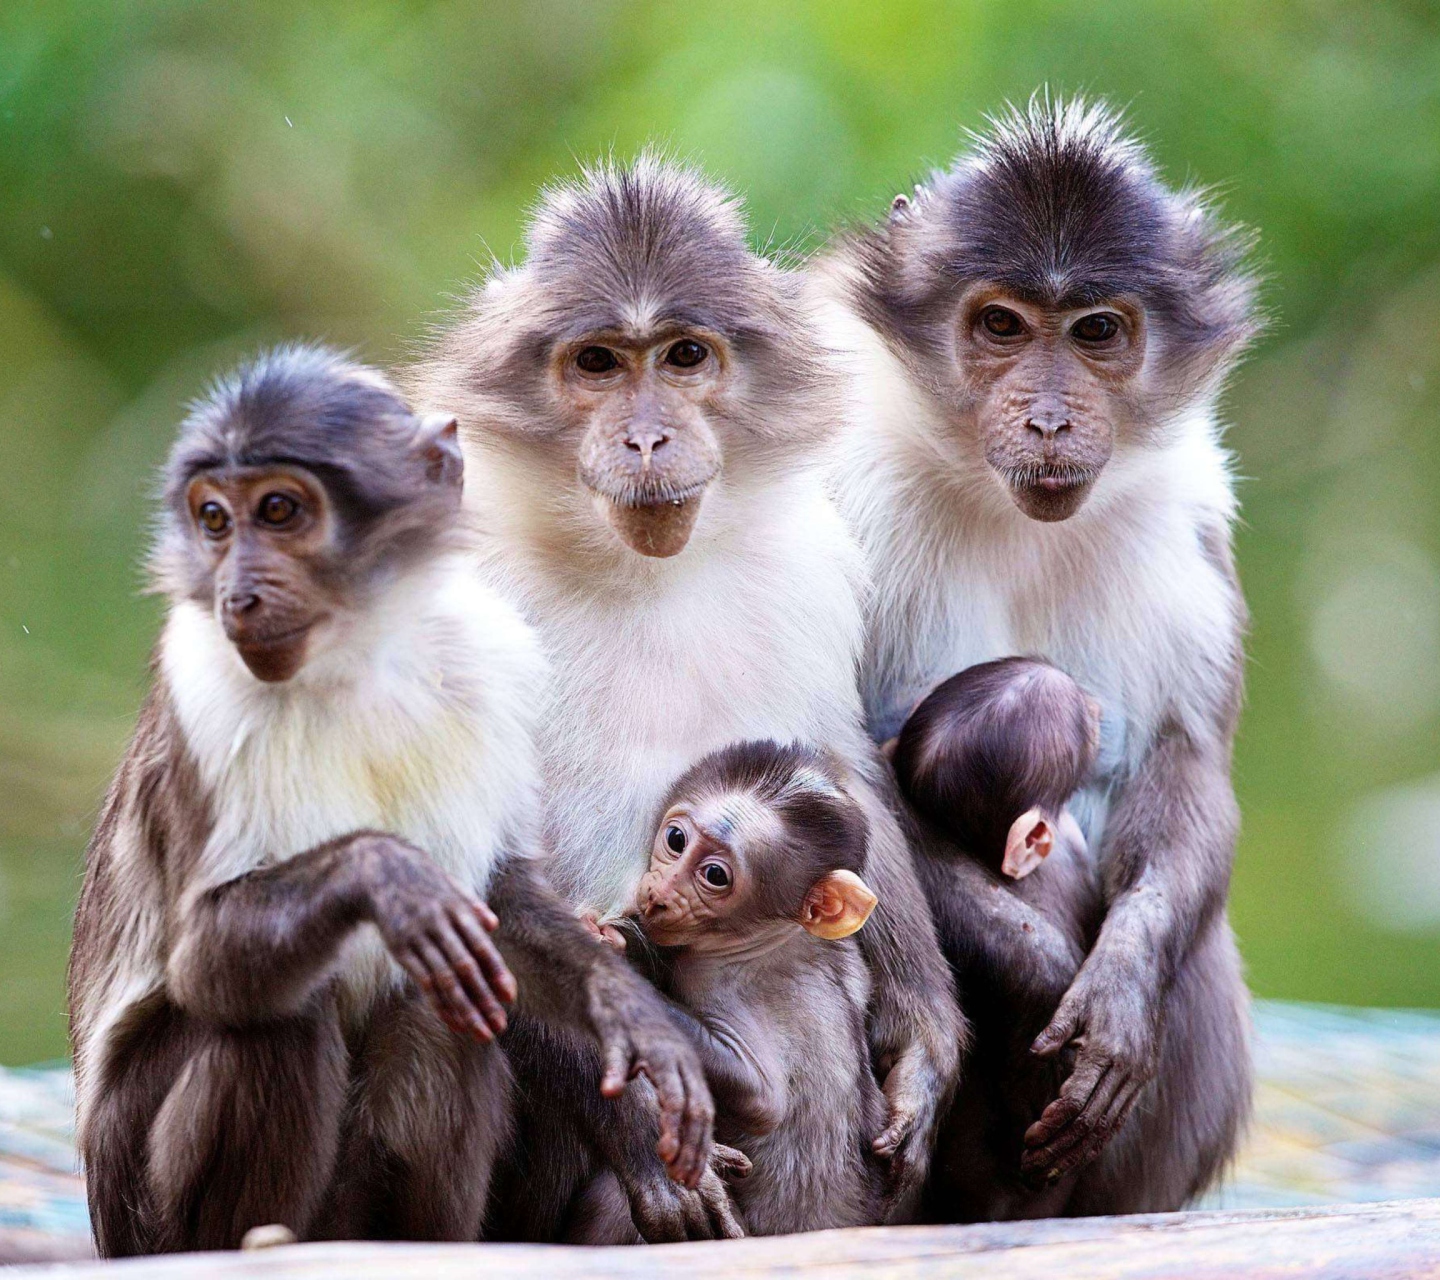 Sfondi Funny Monkeys With Their Babies 1440x1280